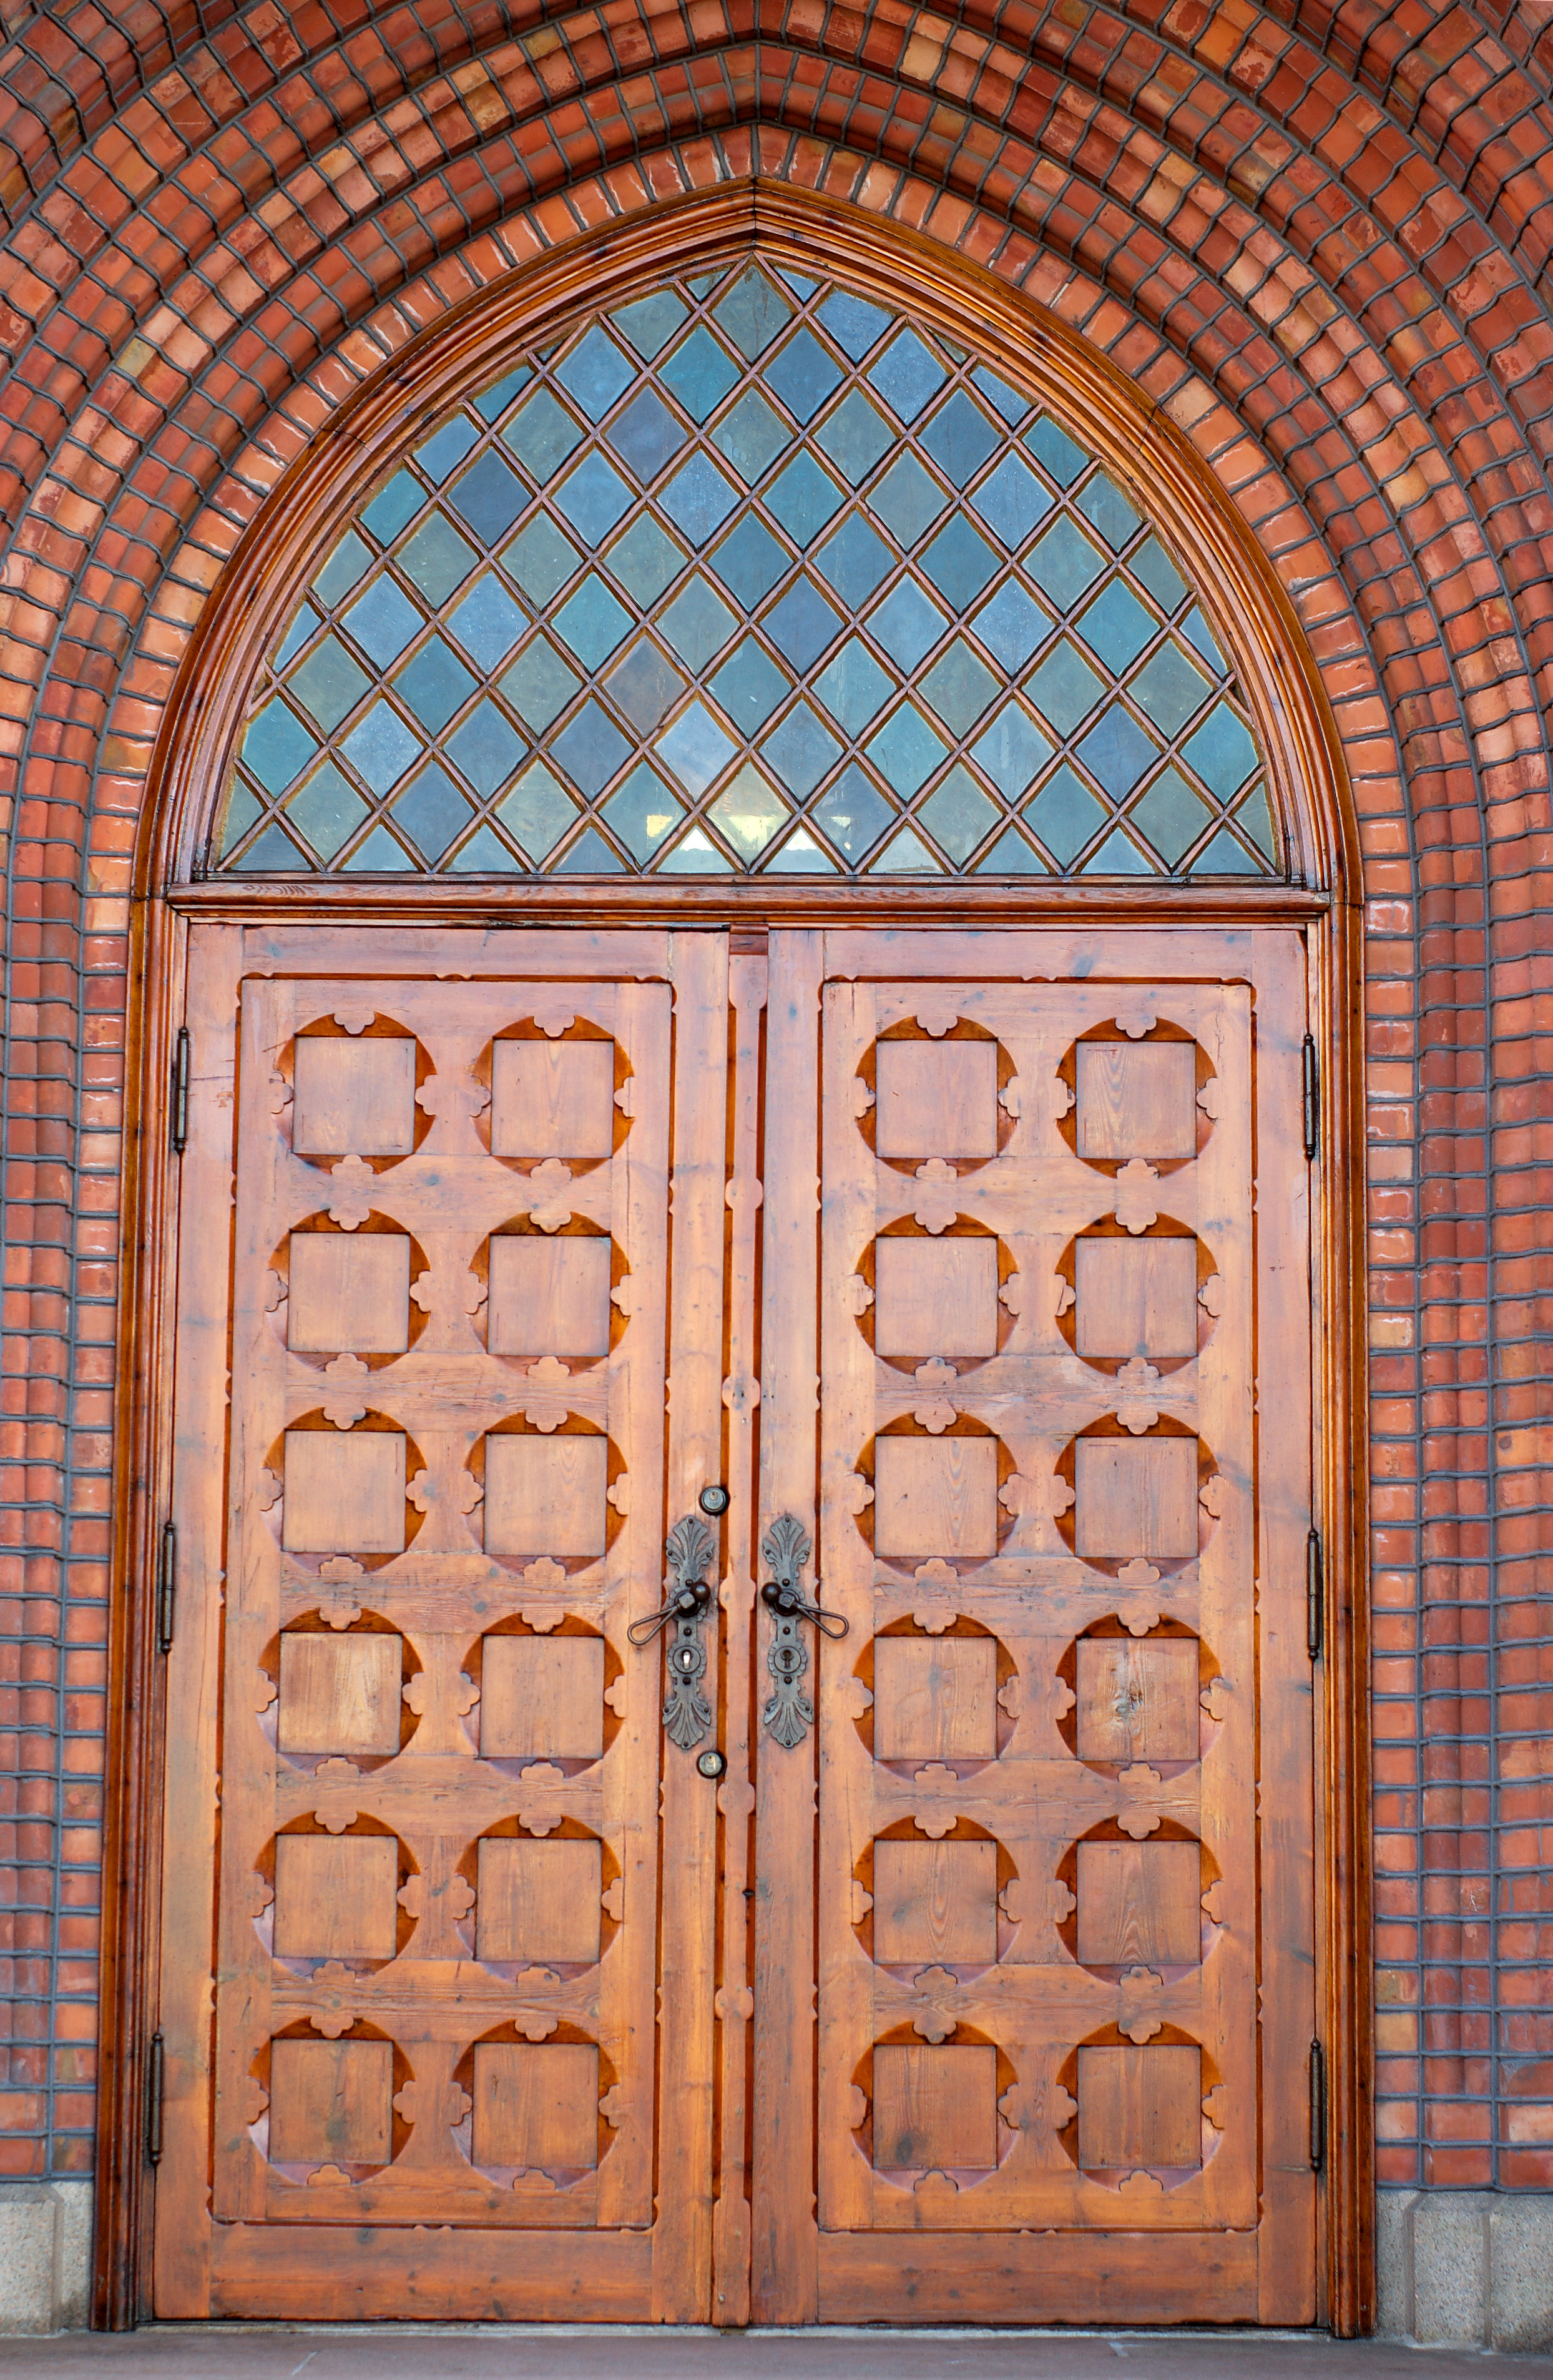 Church door photo